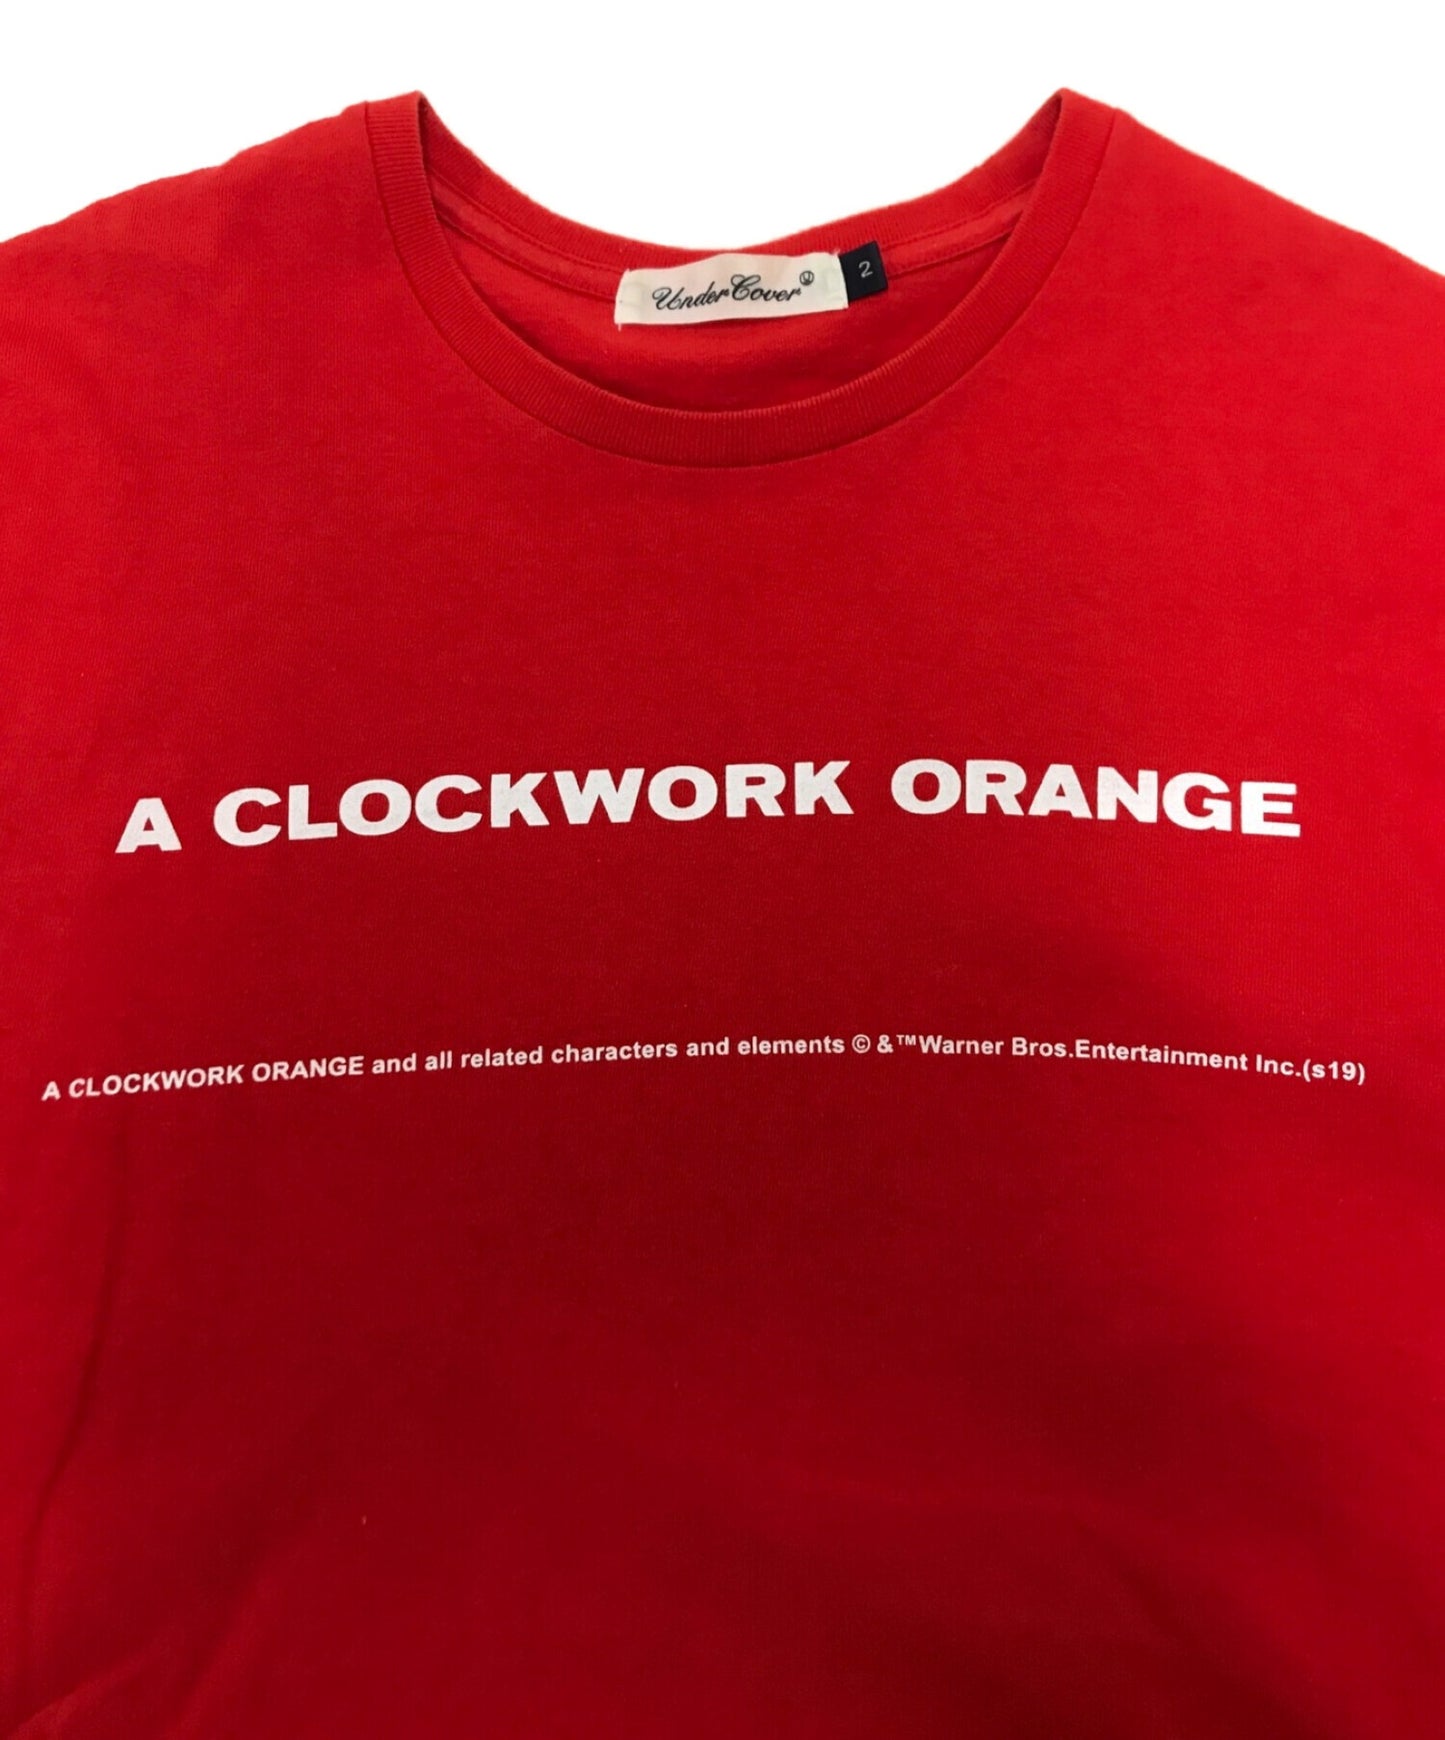 เสื้อยืดที่พิมพ์ออกมาหรือเสื้อยืด CW 4peoples / Clockwork Orange UCX3810